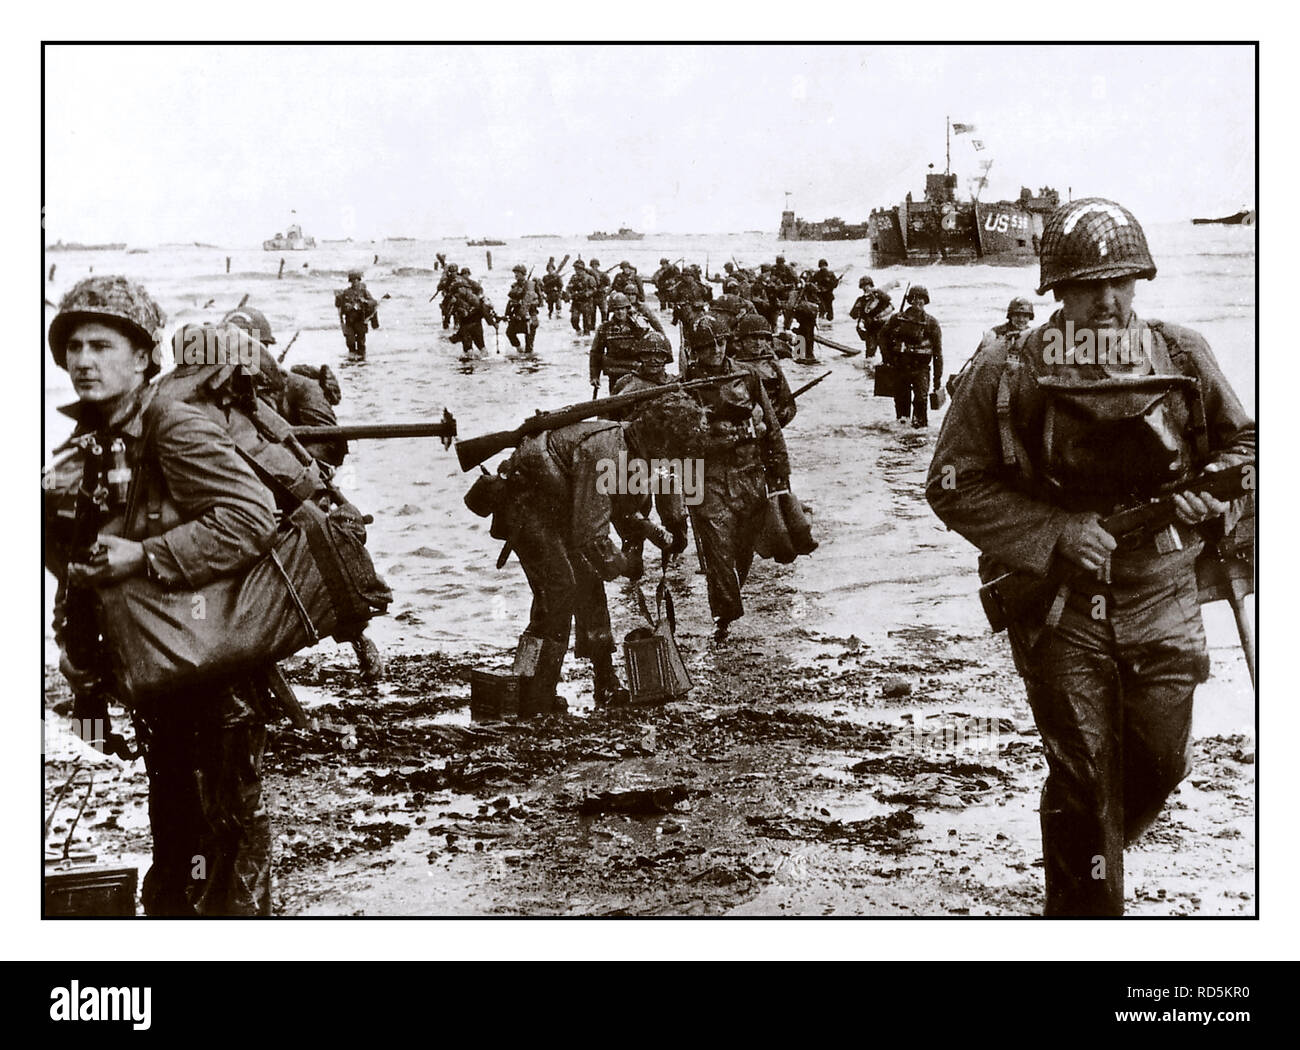 D-DAY OMAHA BEACH NORMANDIE FRANKREICH GI Soldaten der US-Armee Verstärkungen Land auf Omaha Beach in der Normandie D-Day Landungen in der Nähe von Vierville-sur-Mer, Frankreich, am 6. Juni 1944 Stockfoto